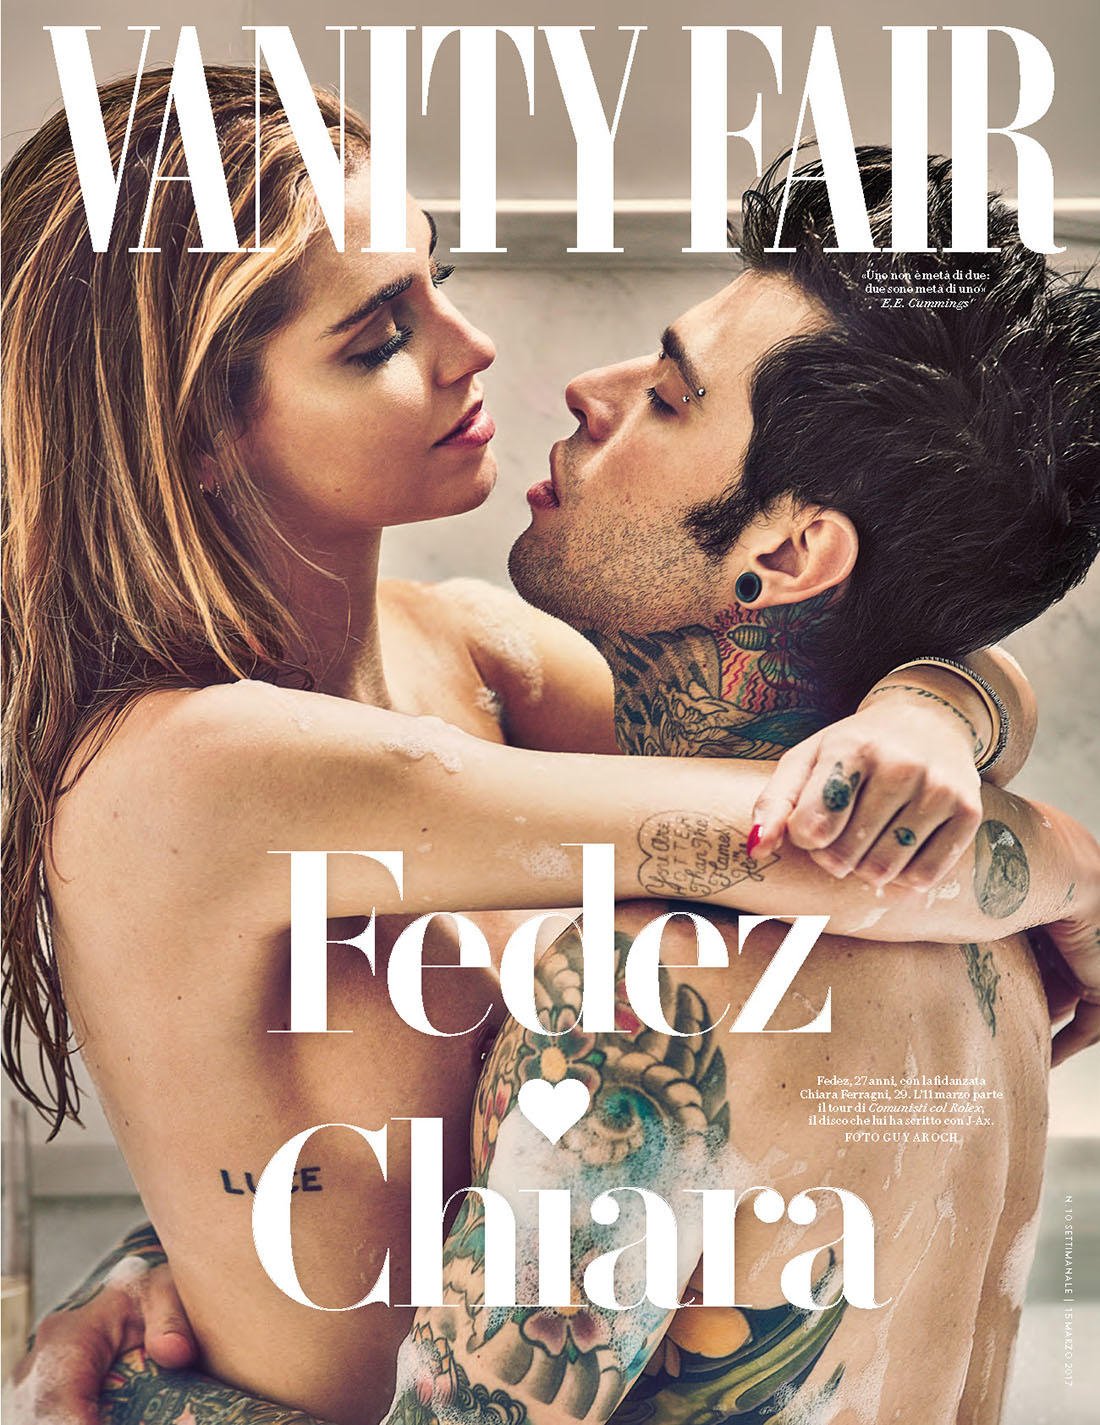 Fedez e Chiara Ferragni sulla copertina di Vanity Fair